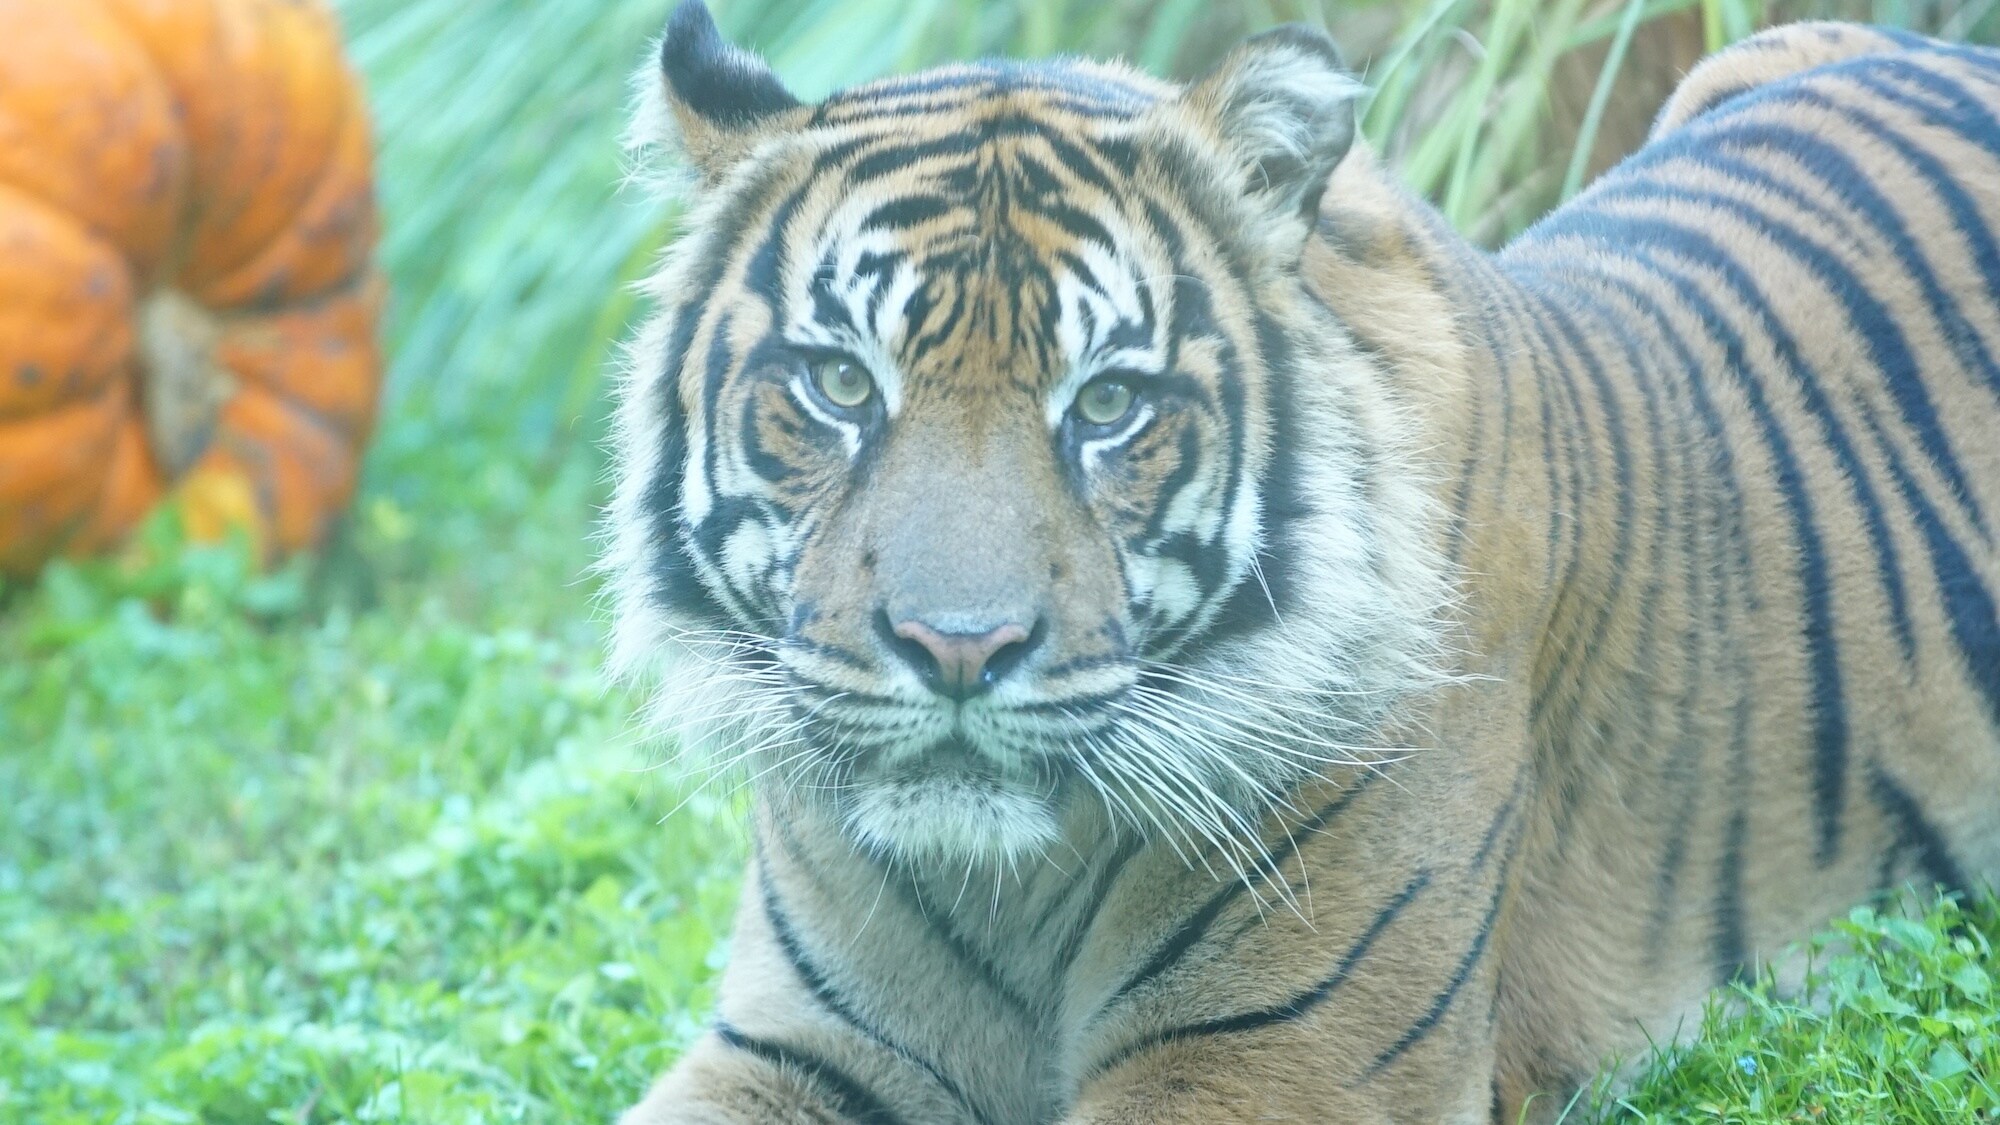 Sumatran tiger at the Maharajah Jungle Trek. (Disney)